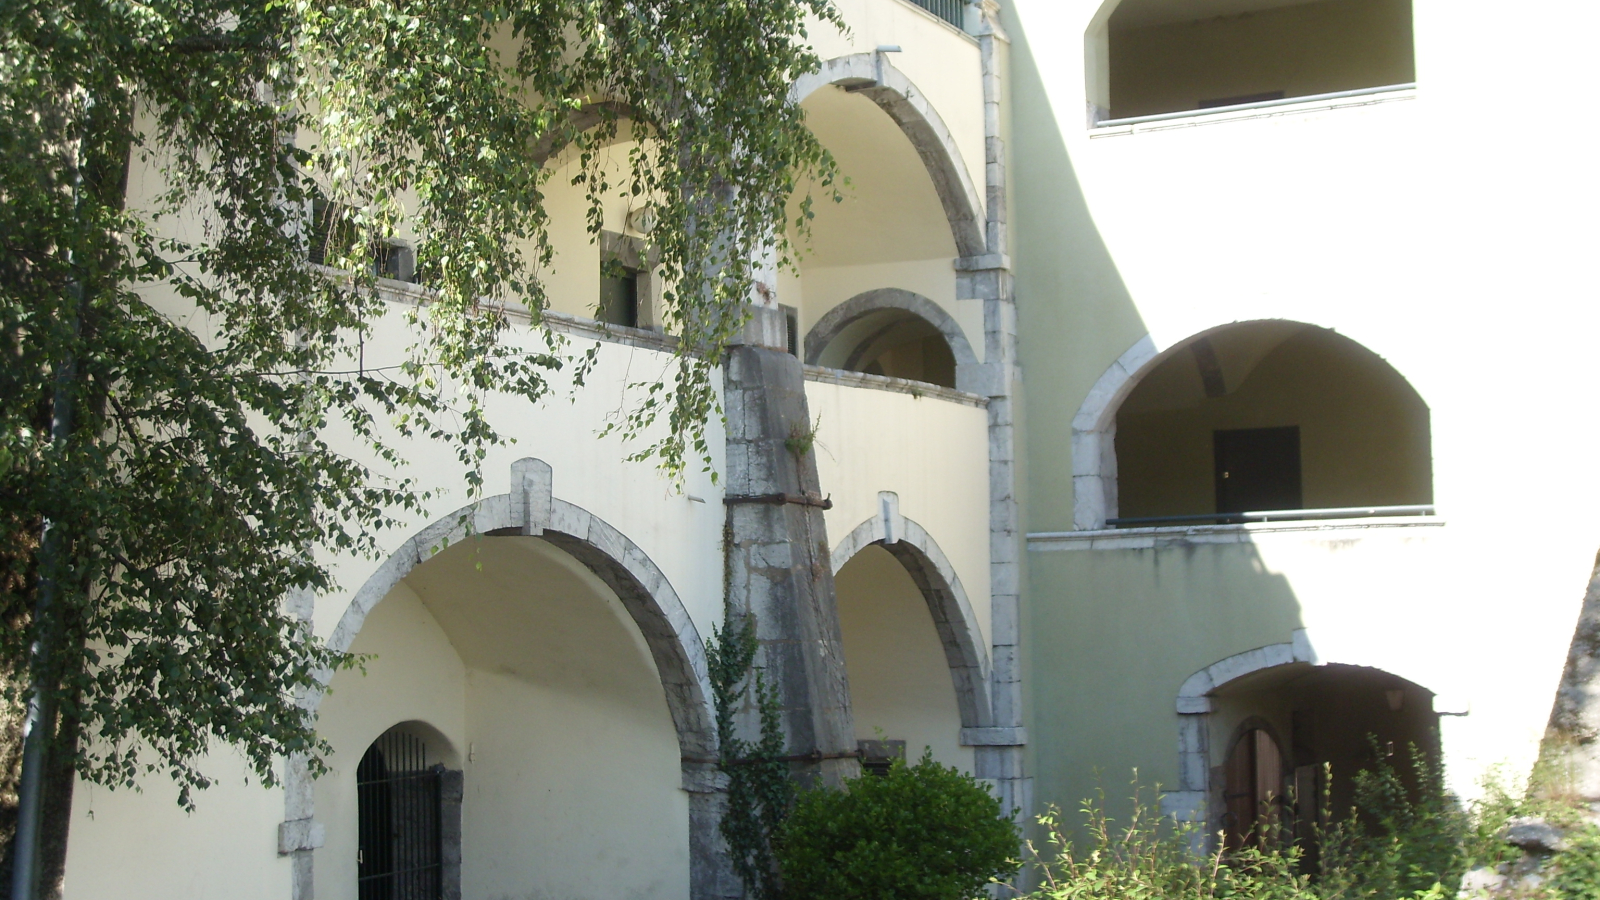 Vieille Ville de Montmélian - Maison des gouverneurs du fort - époque Renaissance